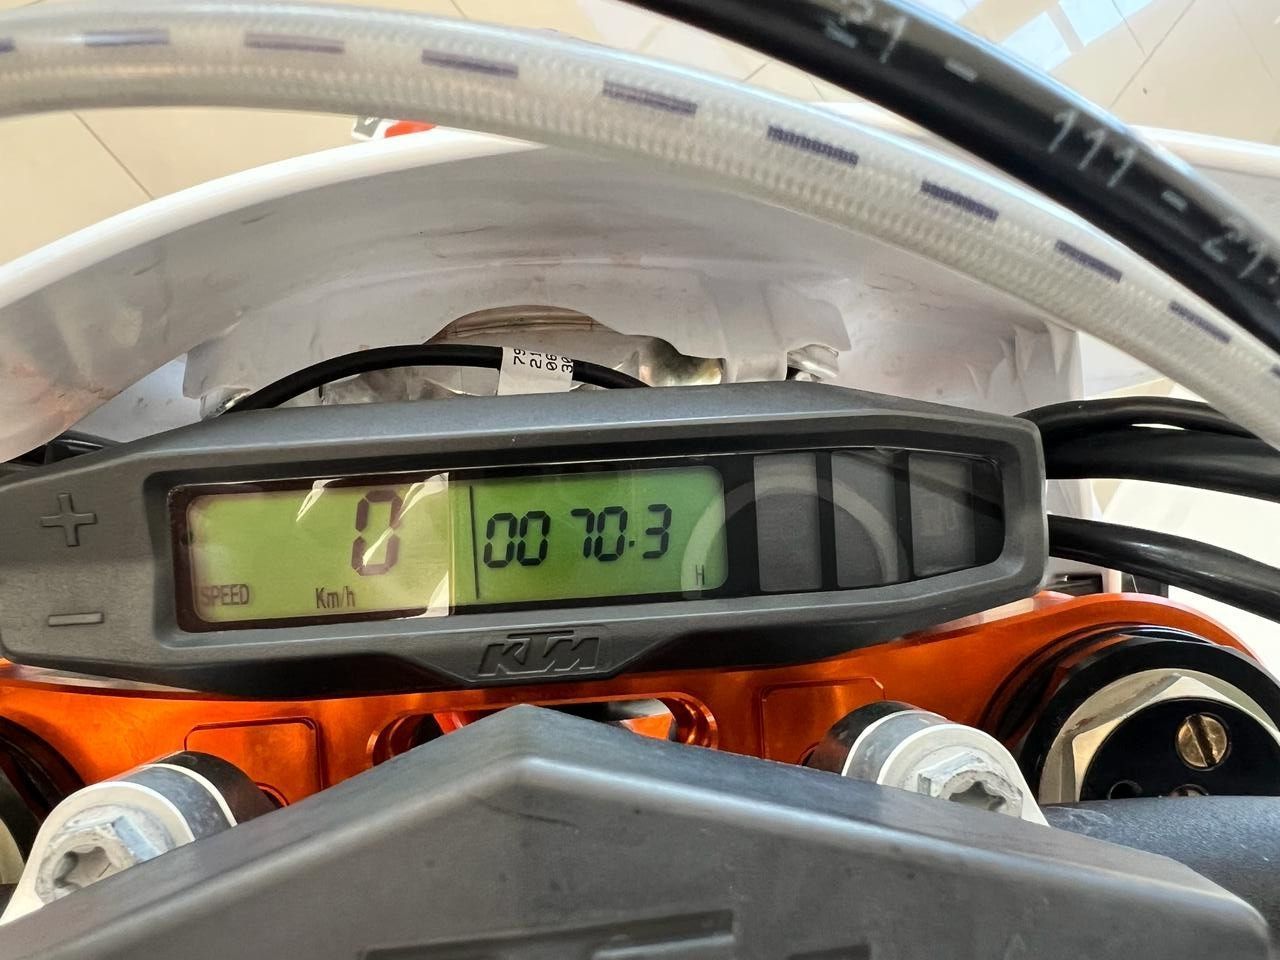 KTM EXC-F Usada en Mendoza, deRuedas